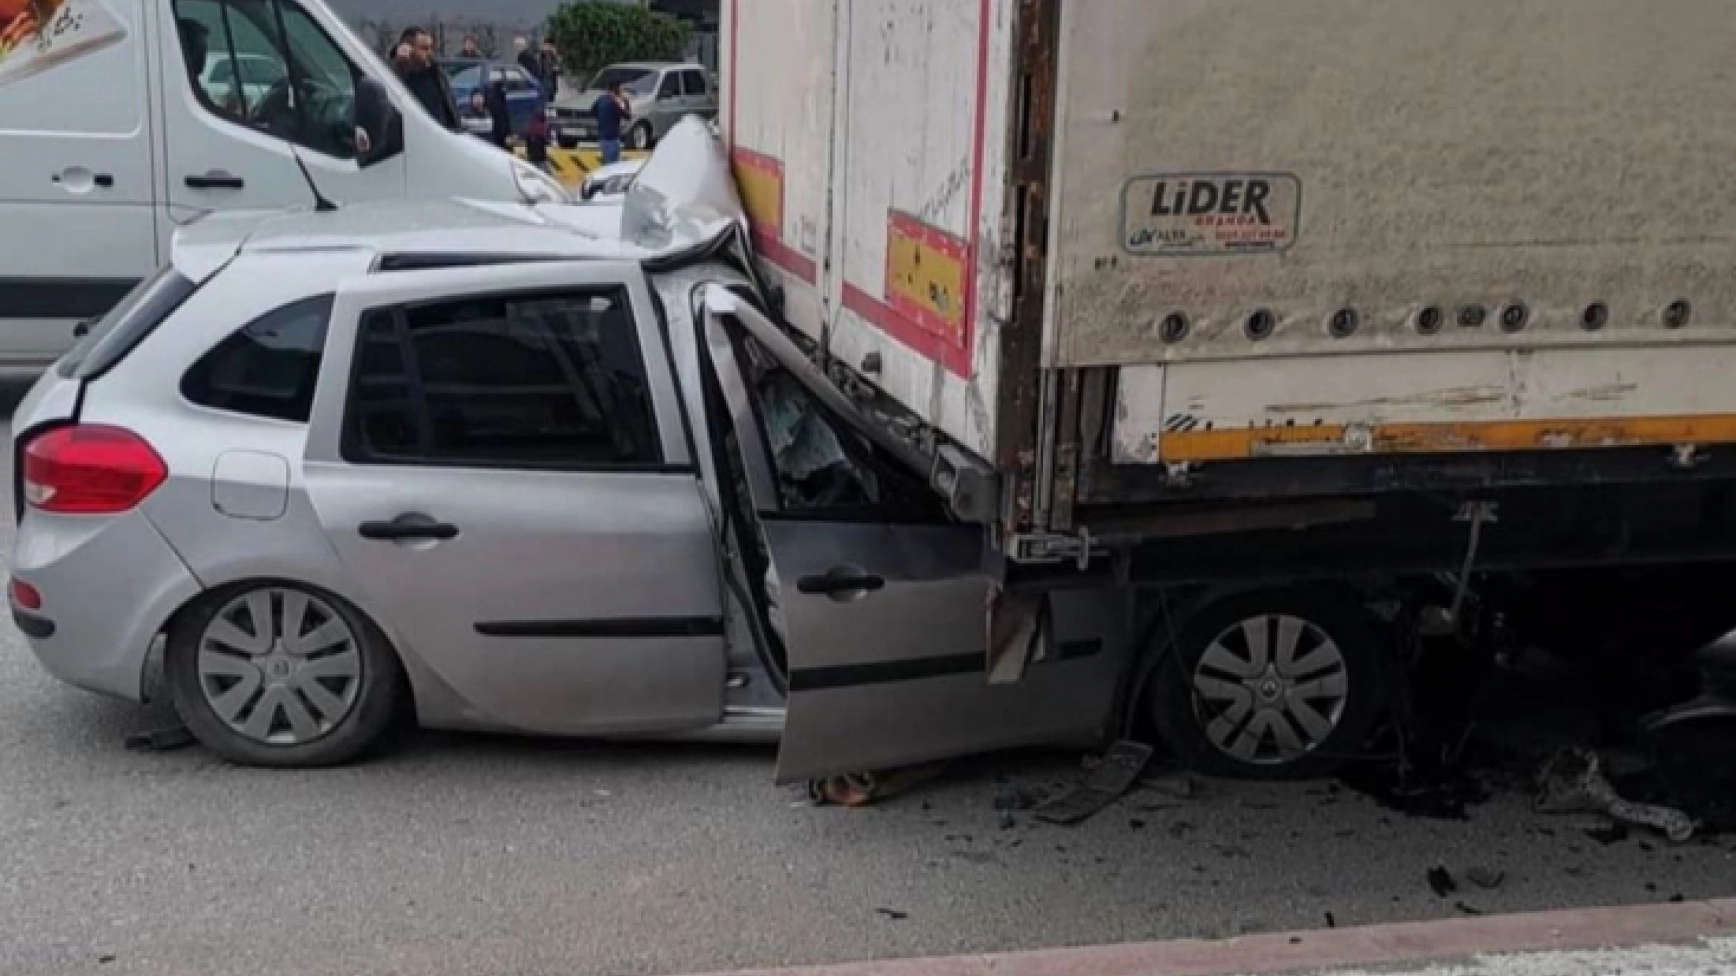 Son Dakika: Konya Meram'da Trafik Kazası - 1 Ölü 2 Yaralı